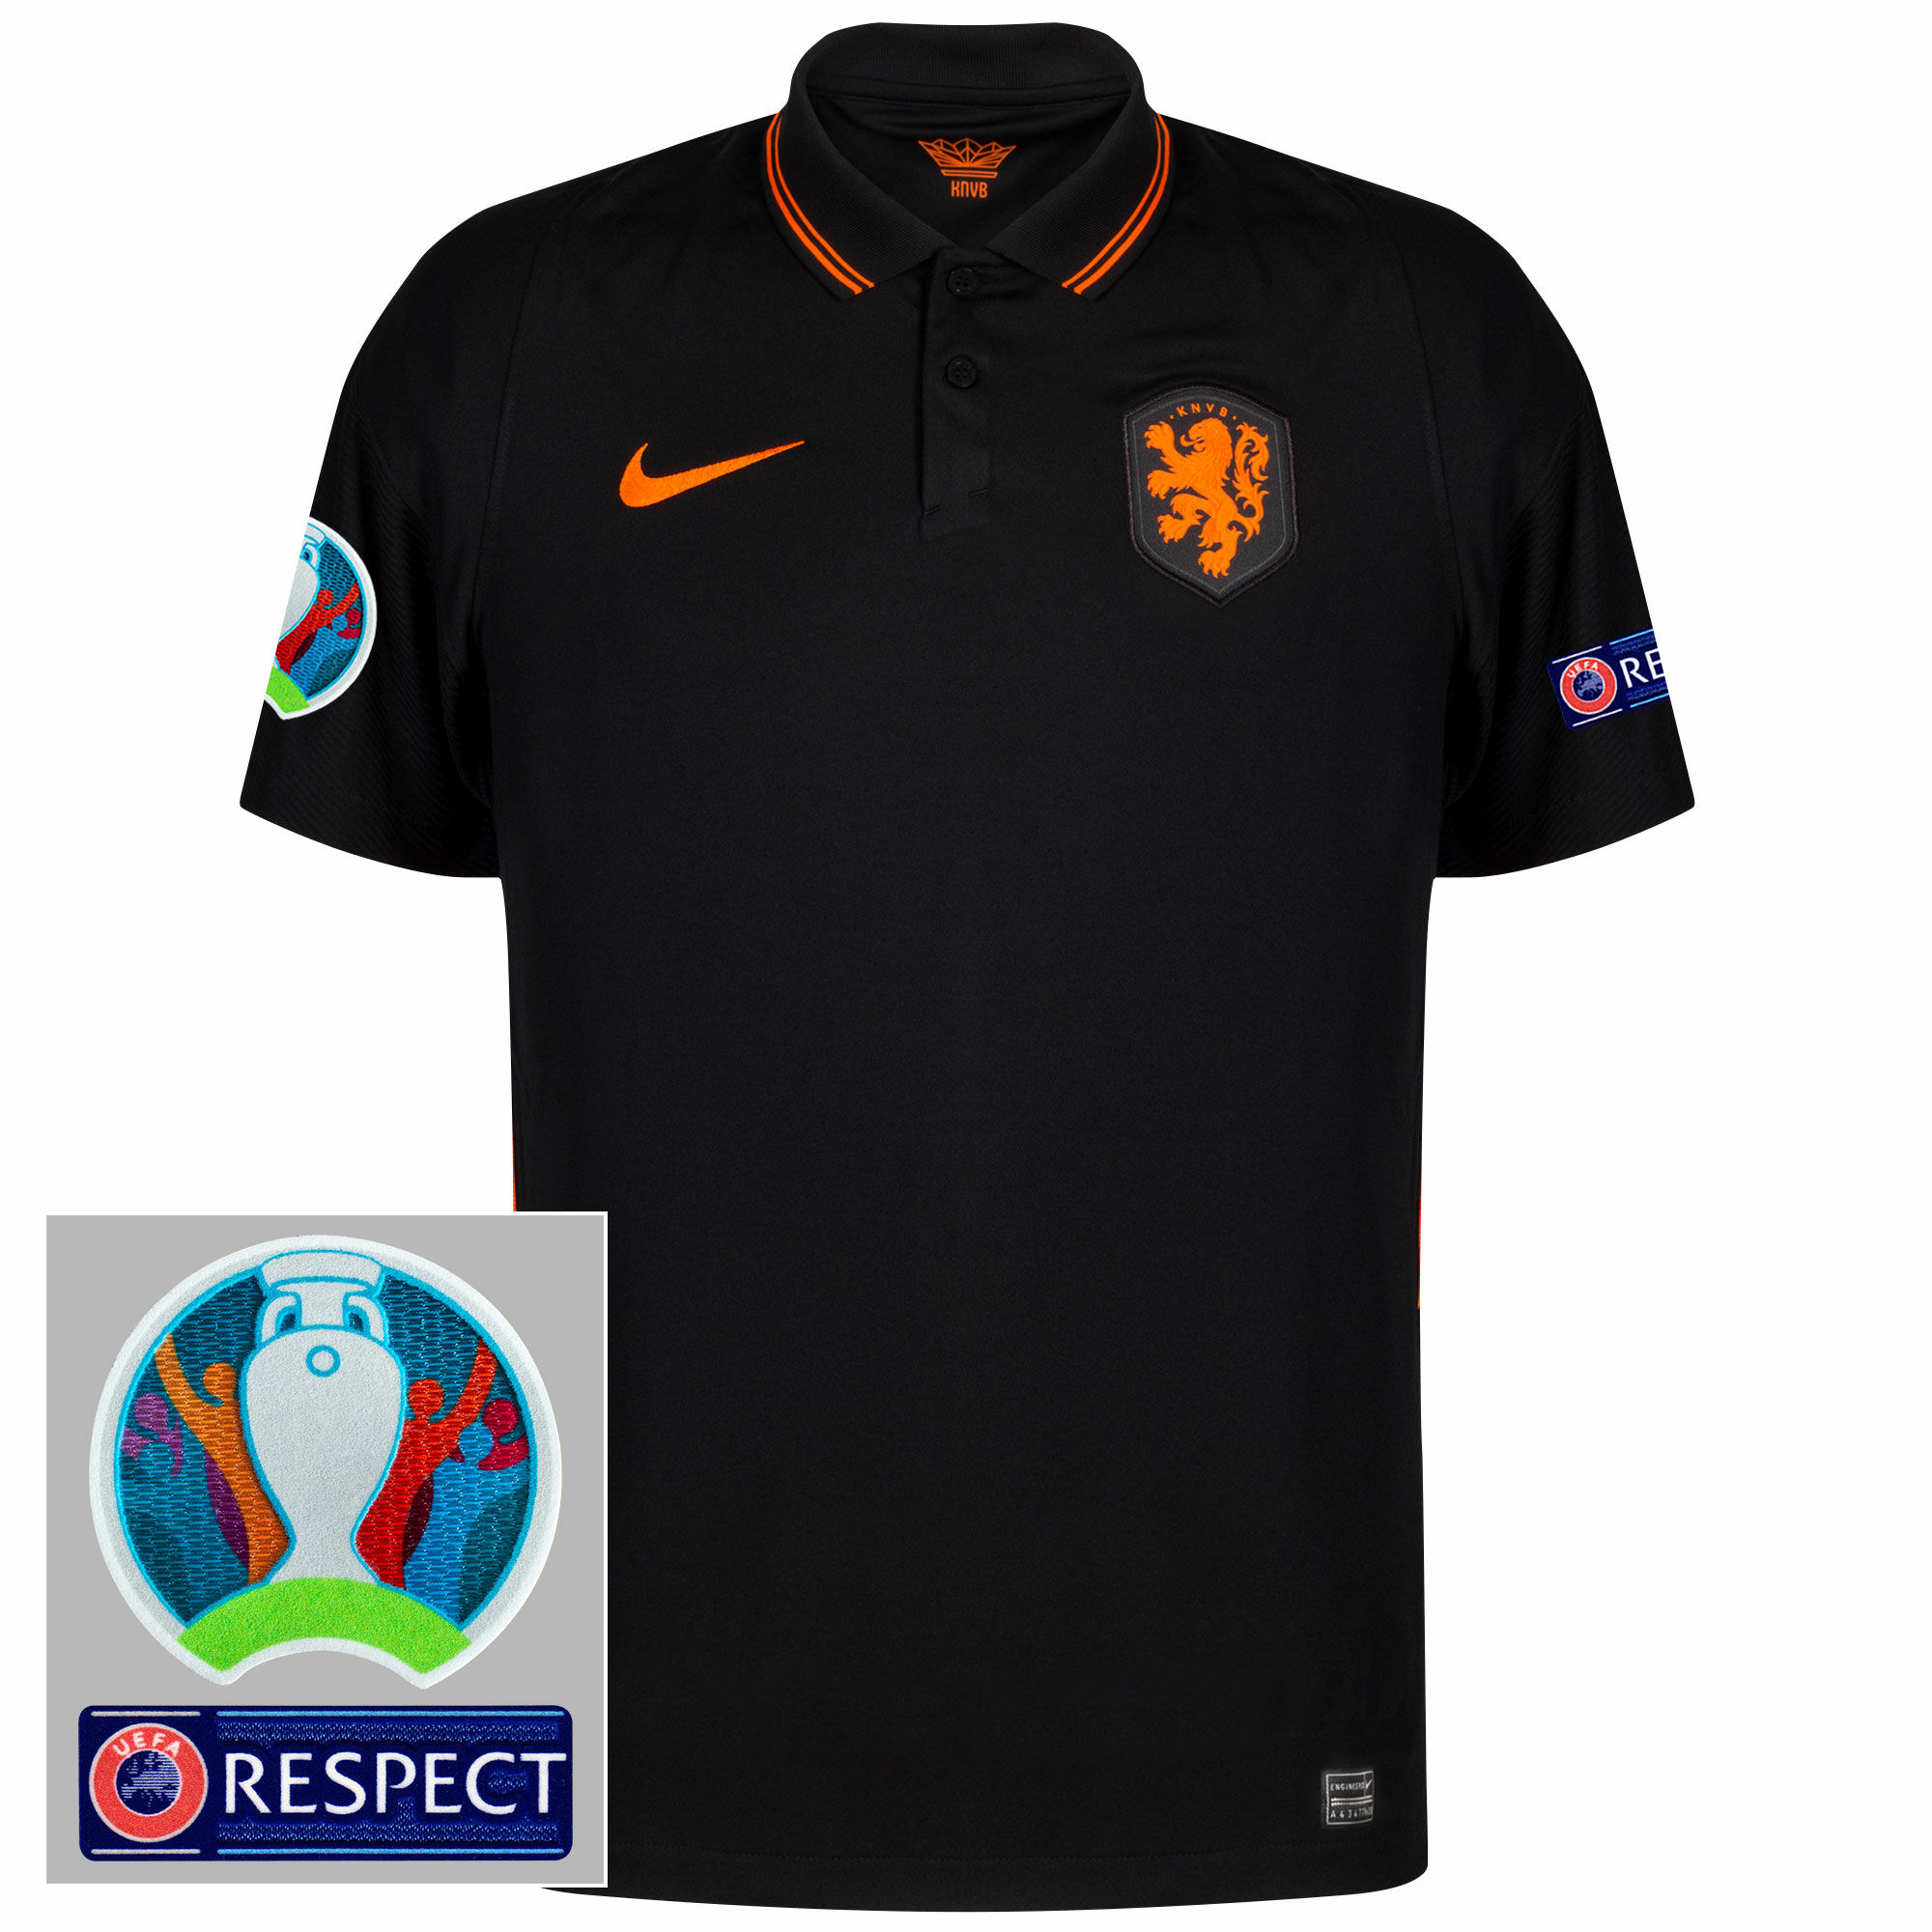 Nizozemí - Dres fotbalový - černý, sezóna 2020/21, loga Euro 2020, venkovní